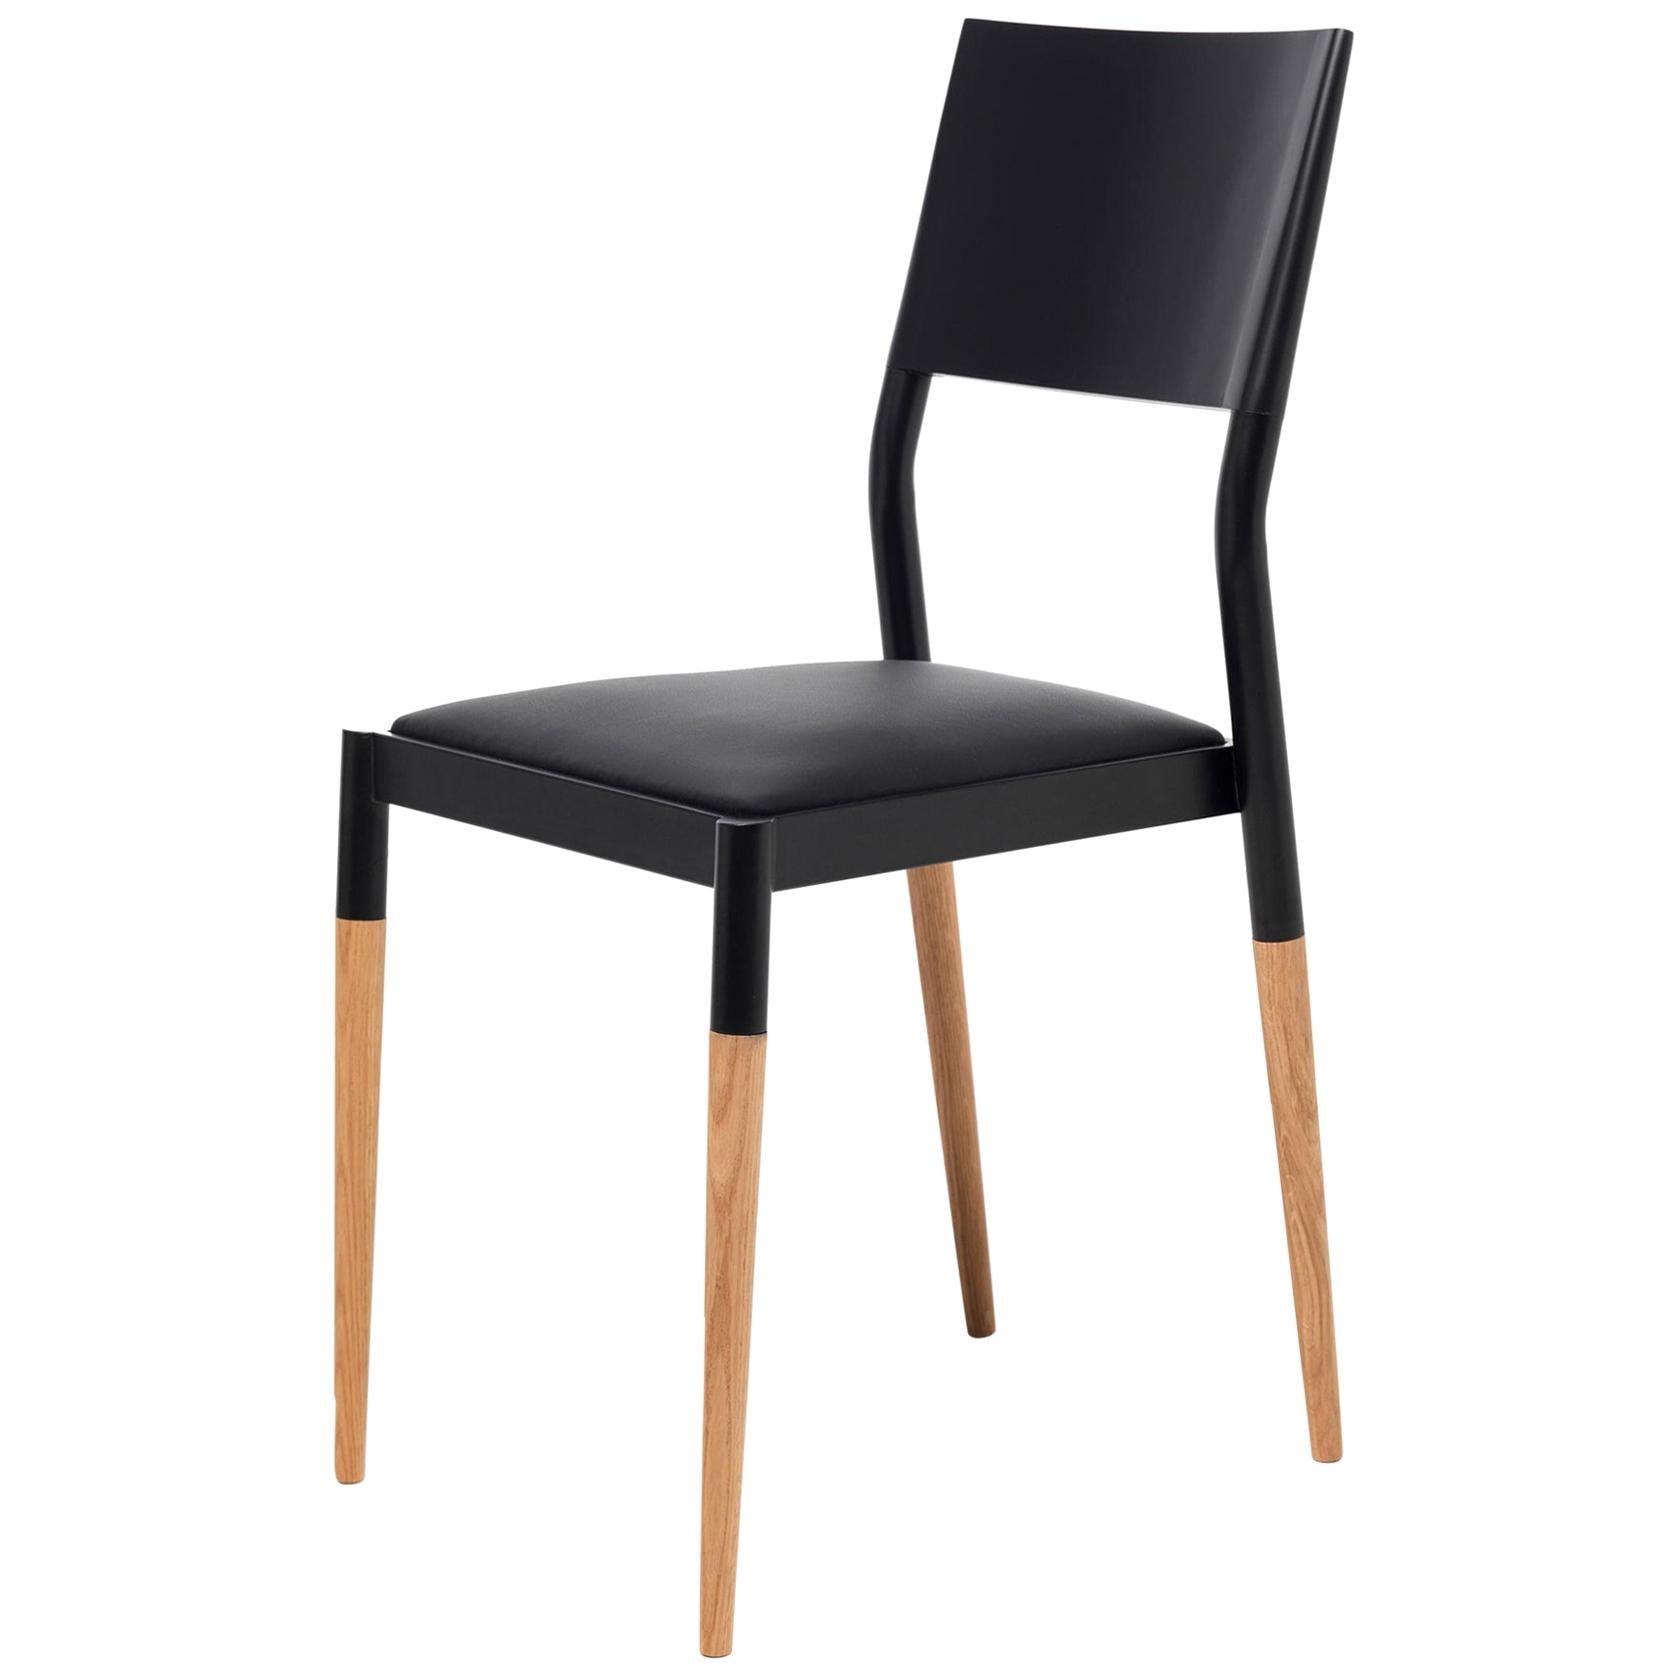 Chaise moderne du 21e siècle en acier et bois avec assise tapissée de cuir